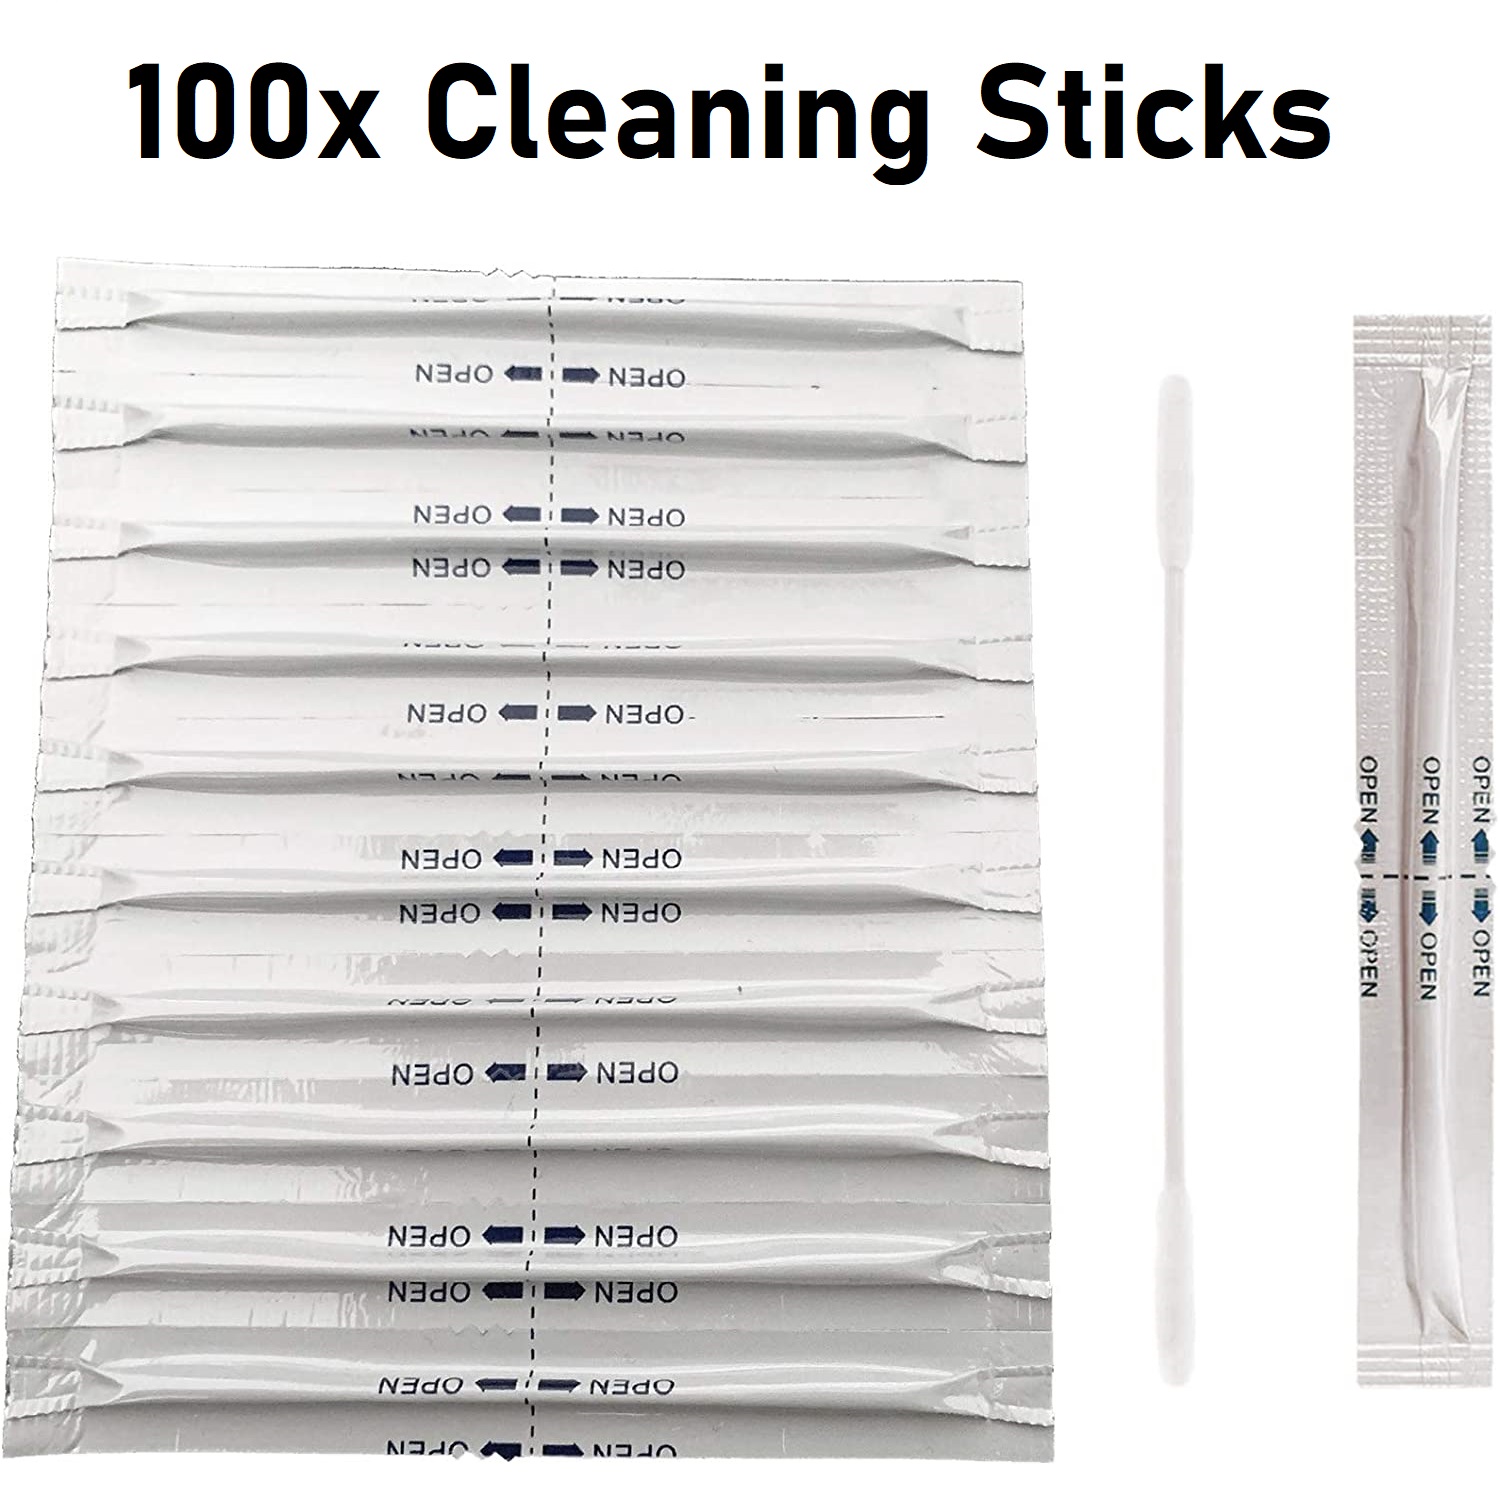  Alles rund ums Dampfen und Rauchen - günstig einkaufen! -  100x Cleaning Sticks Reinigungsstäbchen für E-Zigaretten IQOS cleaning  sticks alkoholgetränkt